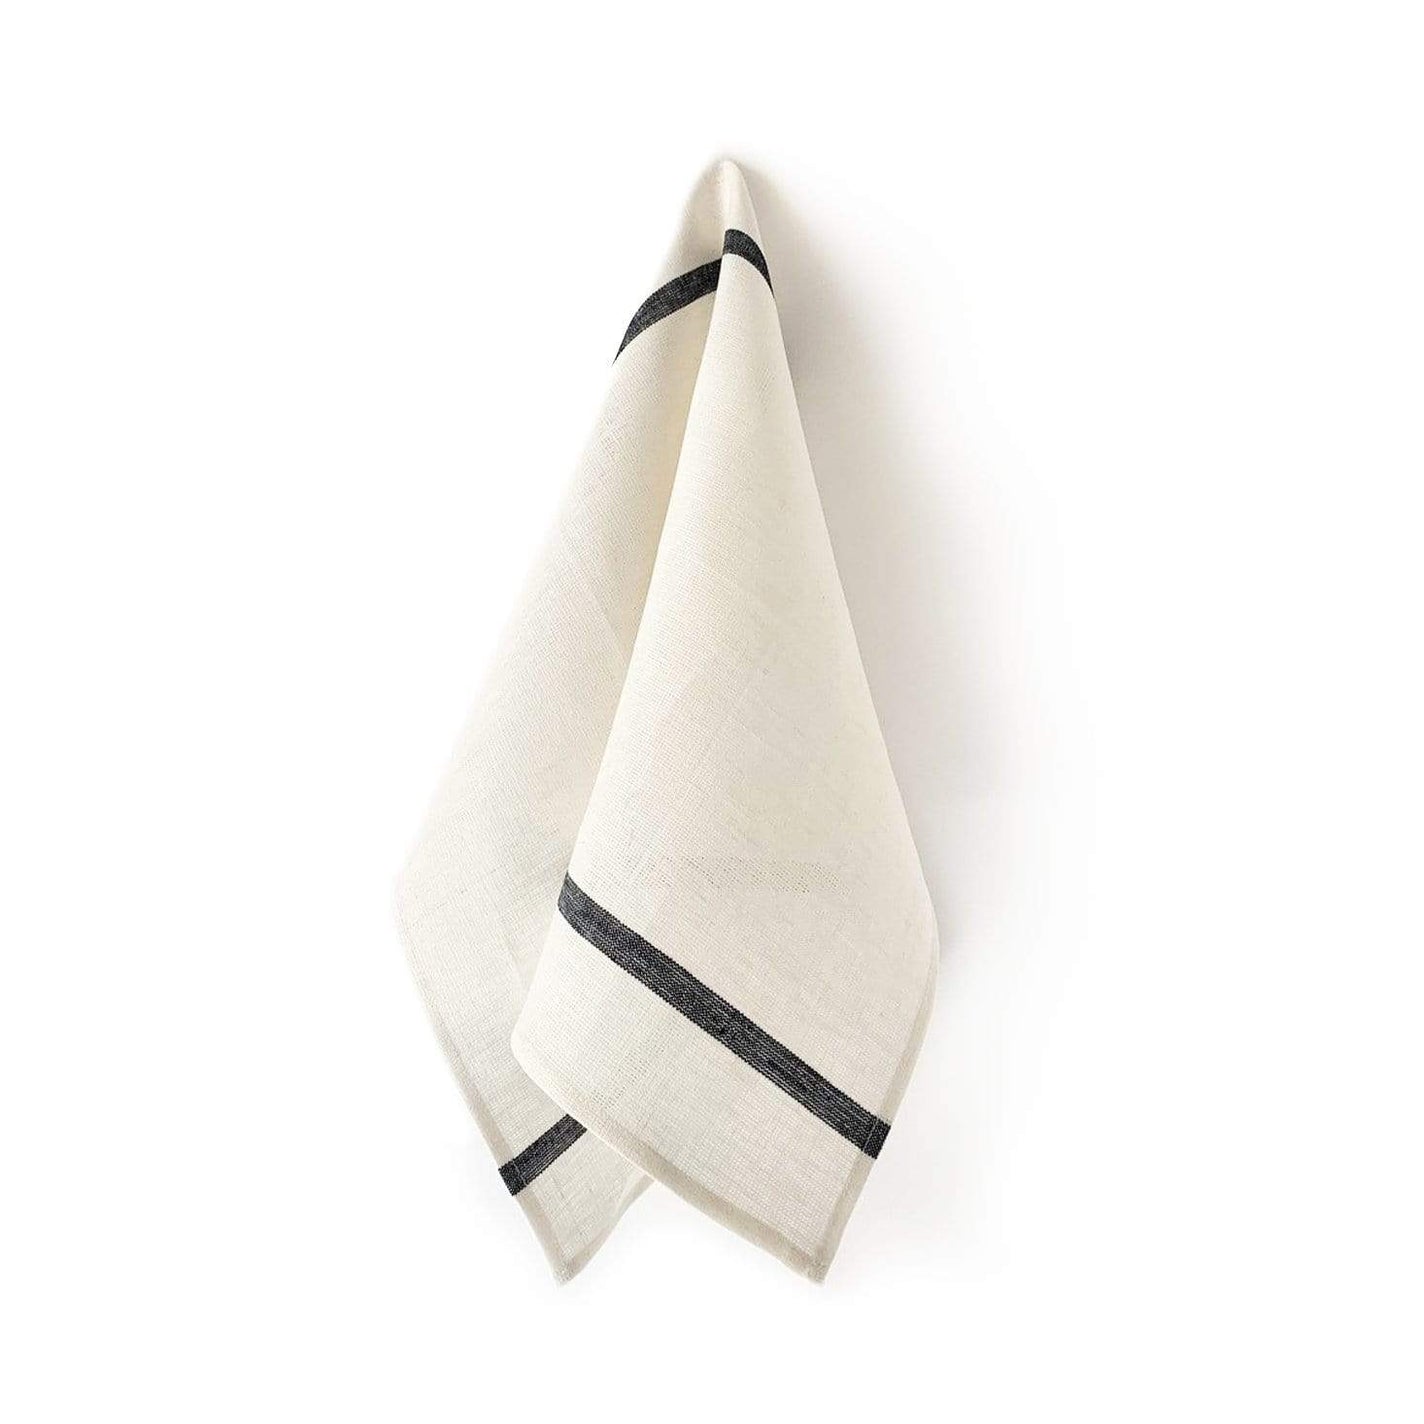 Fog Linen Work Thick Linen Kitchen Cloth: White Navy Stripe